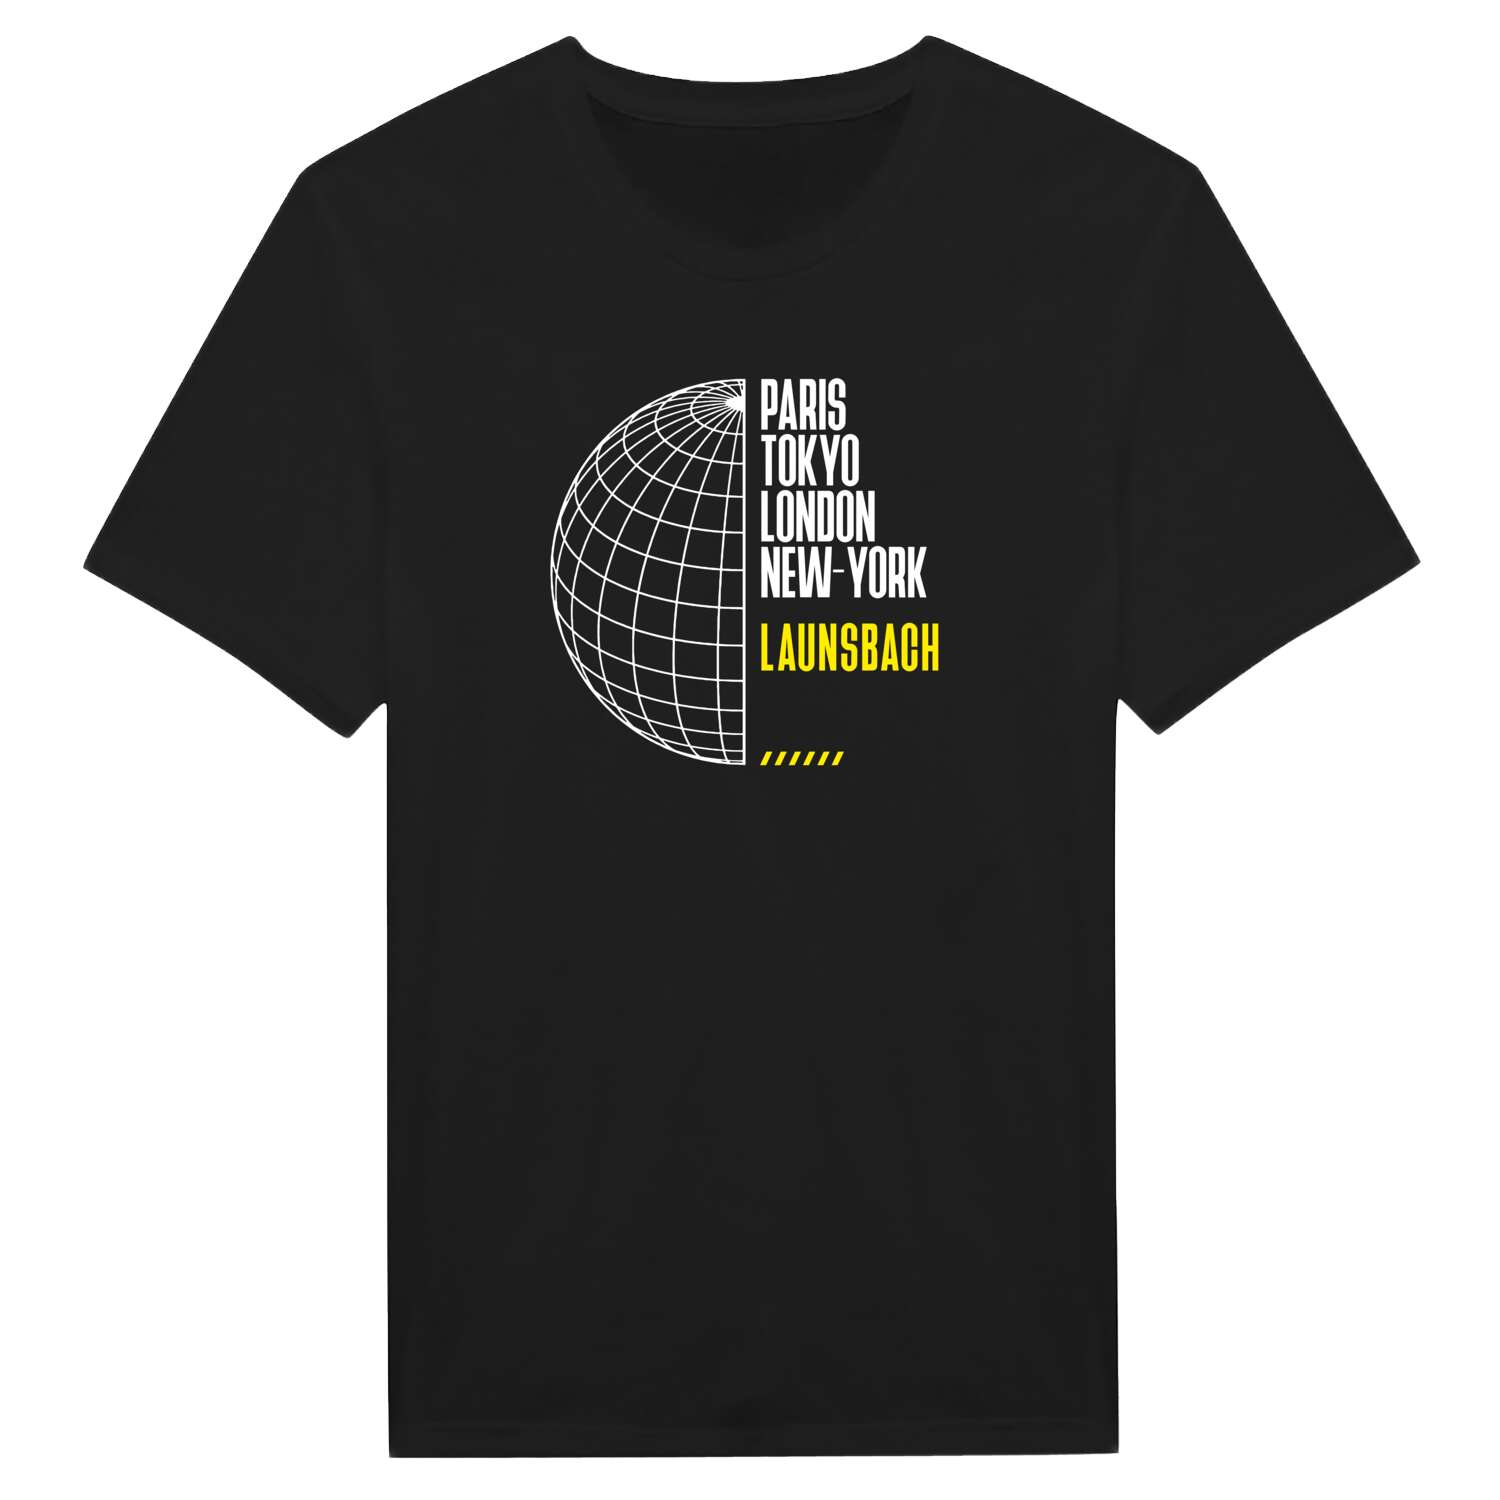 Launsbach T-Shirt »Paris Tokyo London«